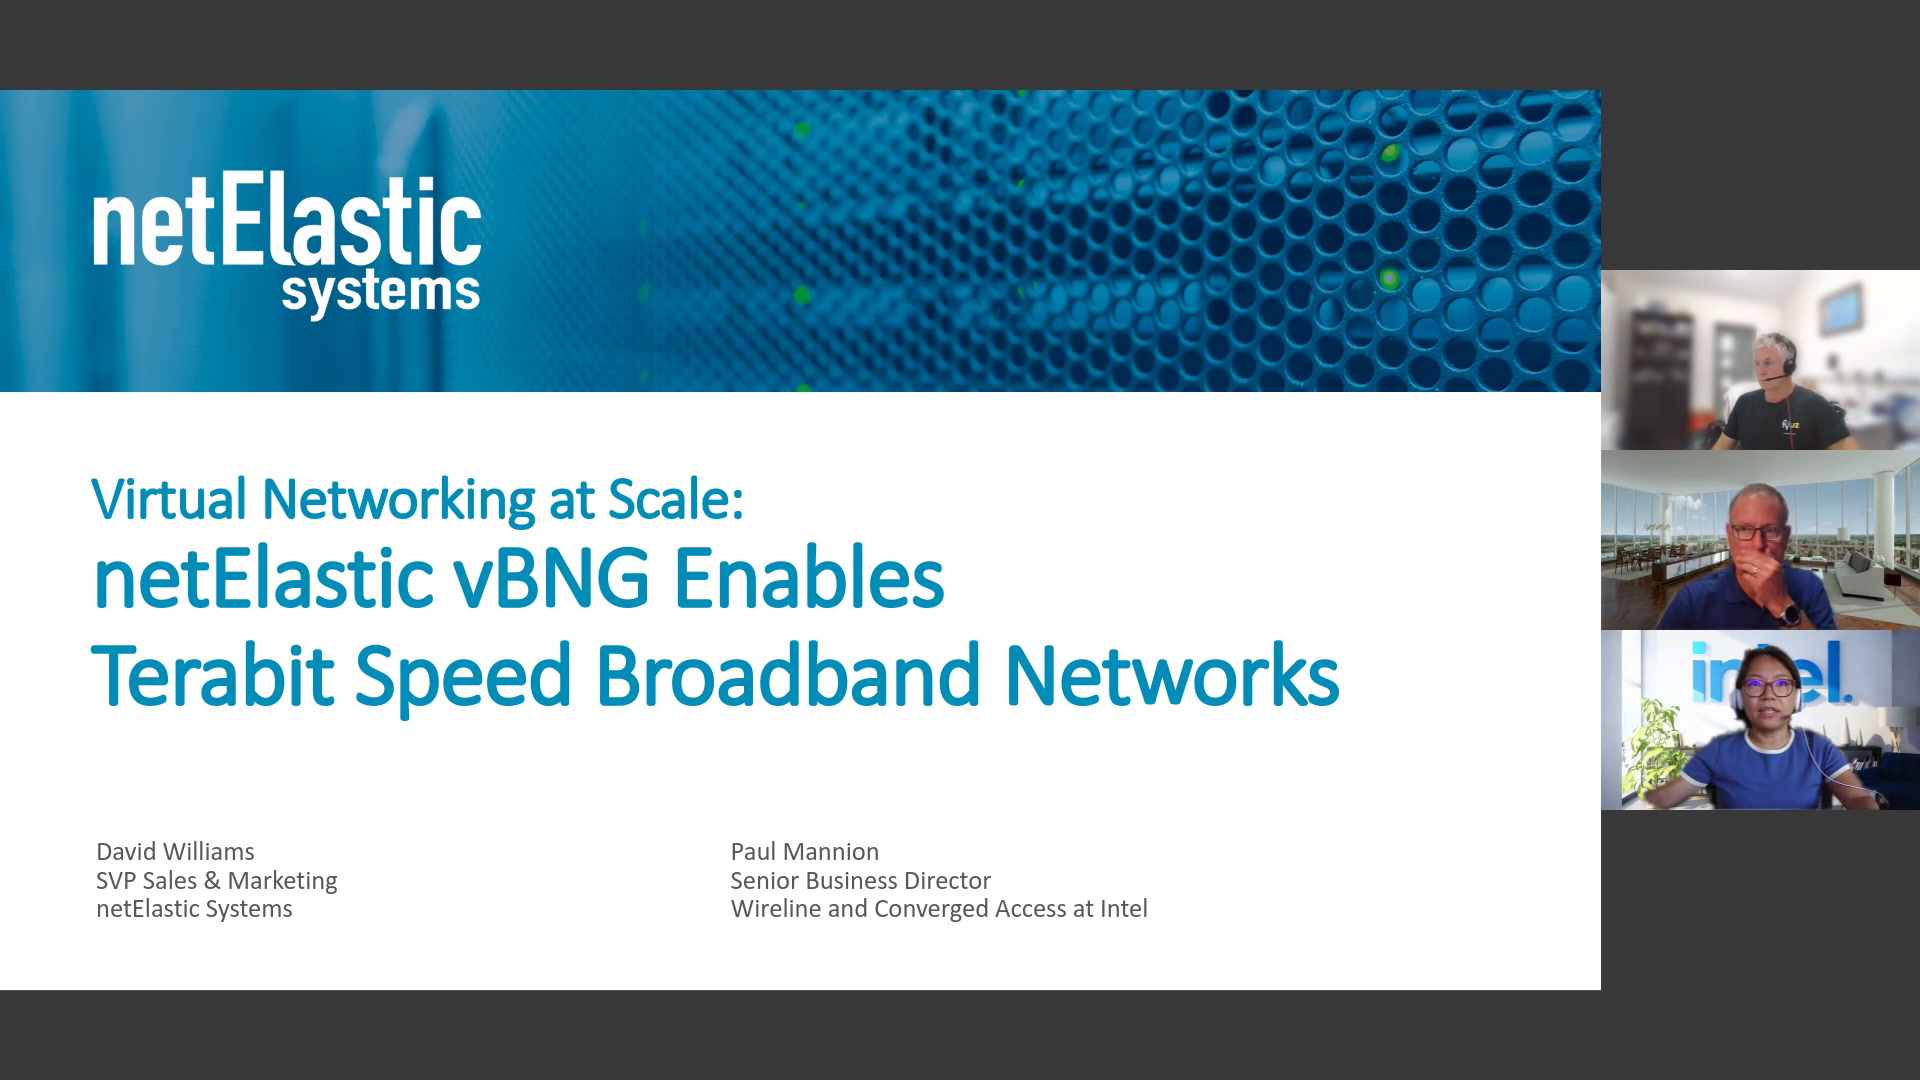 netElastic vBNG Enables Terabit Speed Broadband Networks